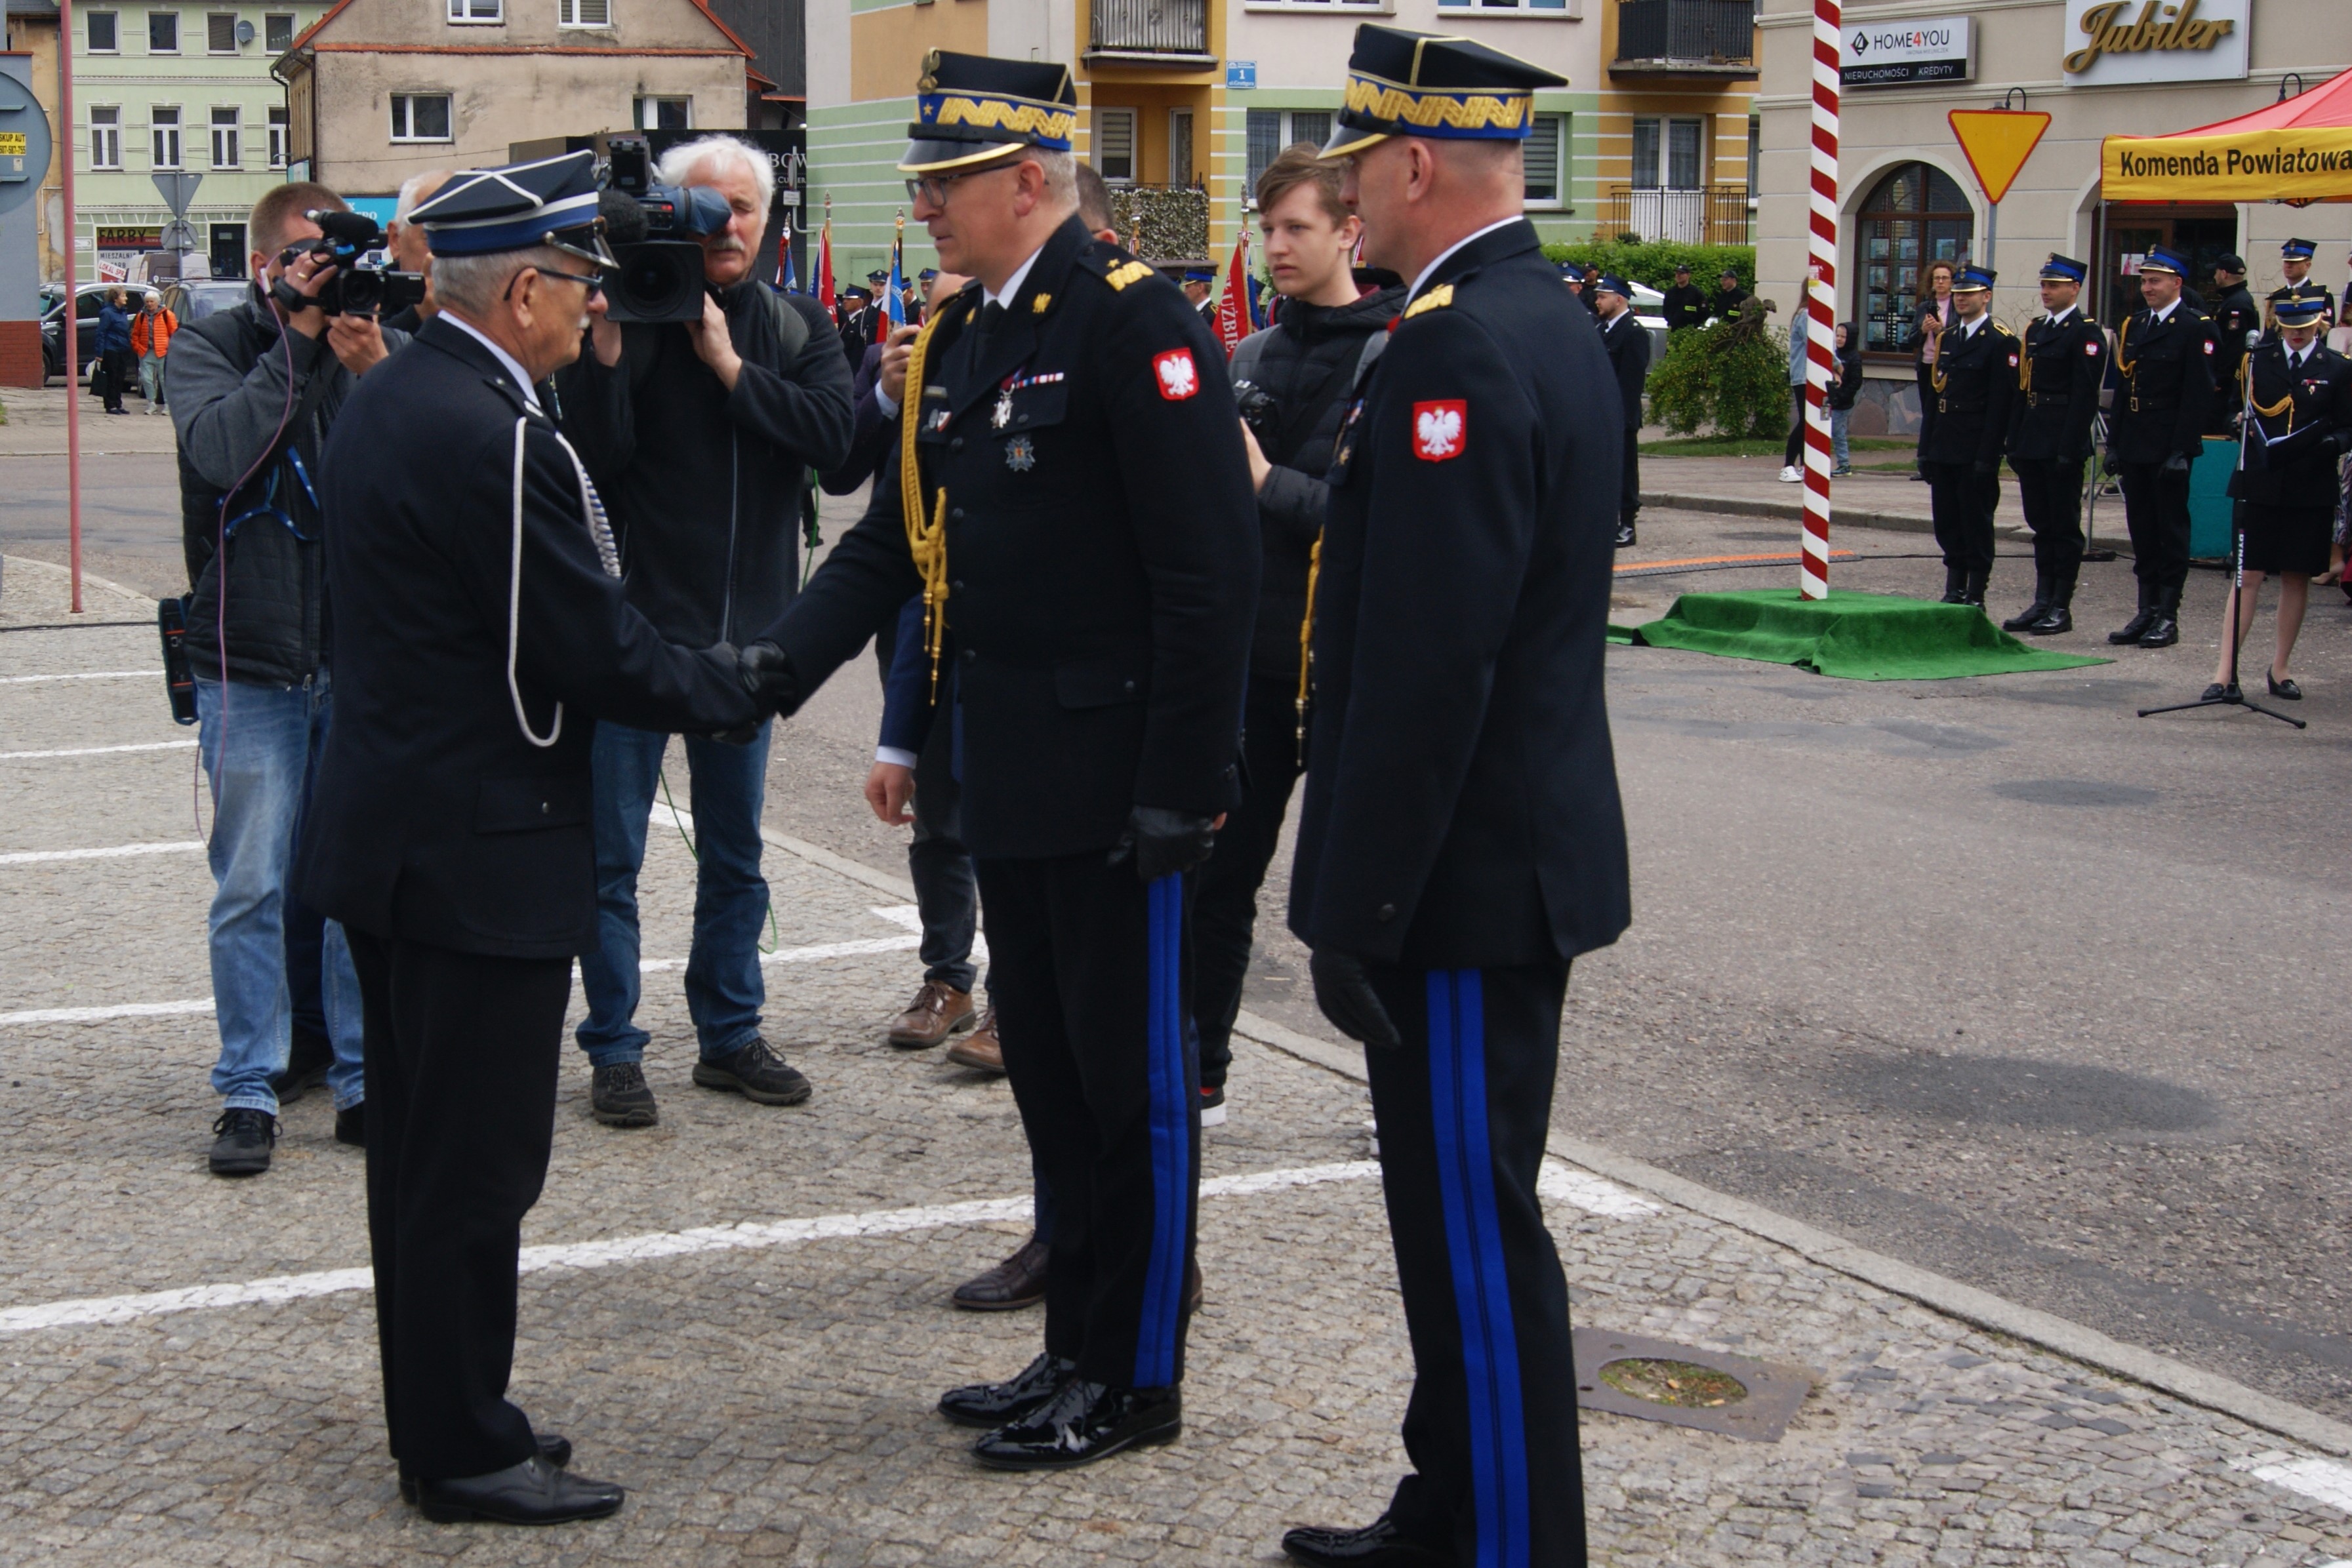 Zastępca komendanta głównego PSP podaje rękę druhowi OSP w geście gratulacji, obok komendanta stoi komendant wojewódzki